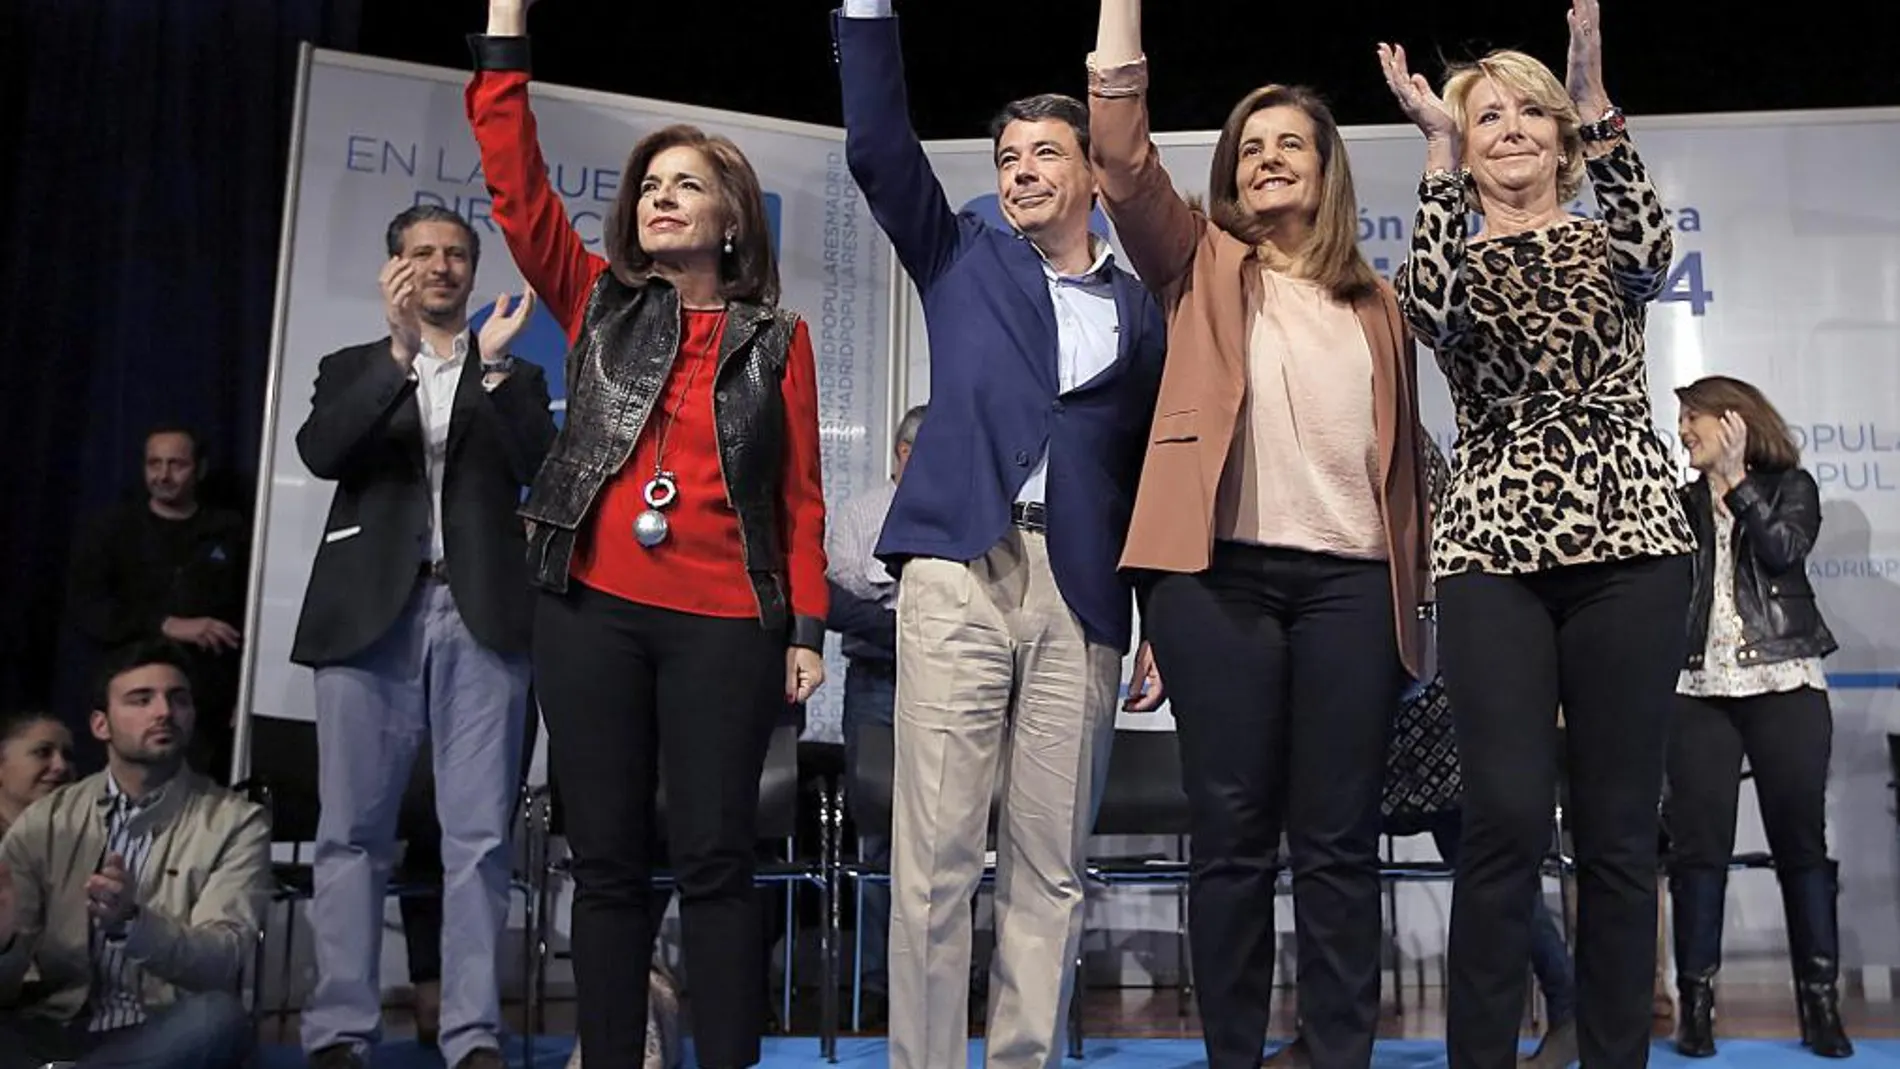 González y Botella son los aspirantes declarados. Aguirre junto con Cristina Cifuentes, las «quinielables»